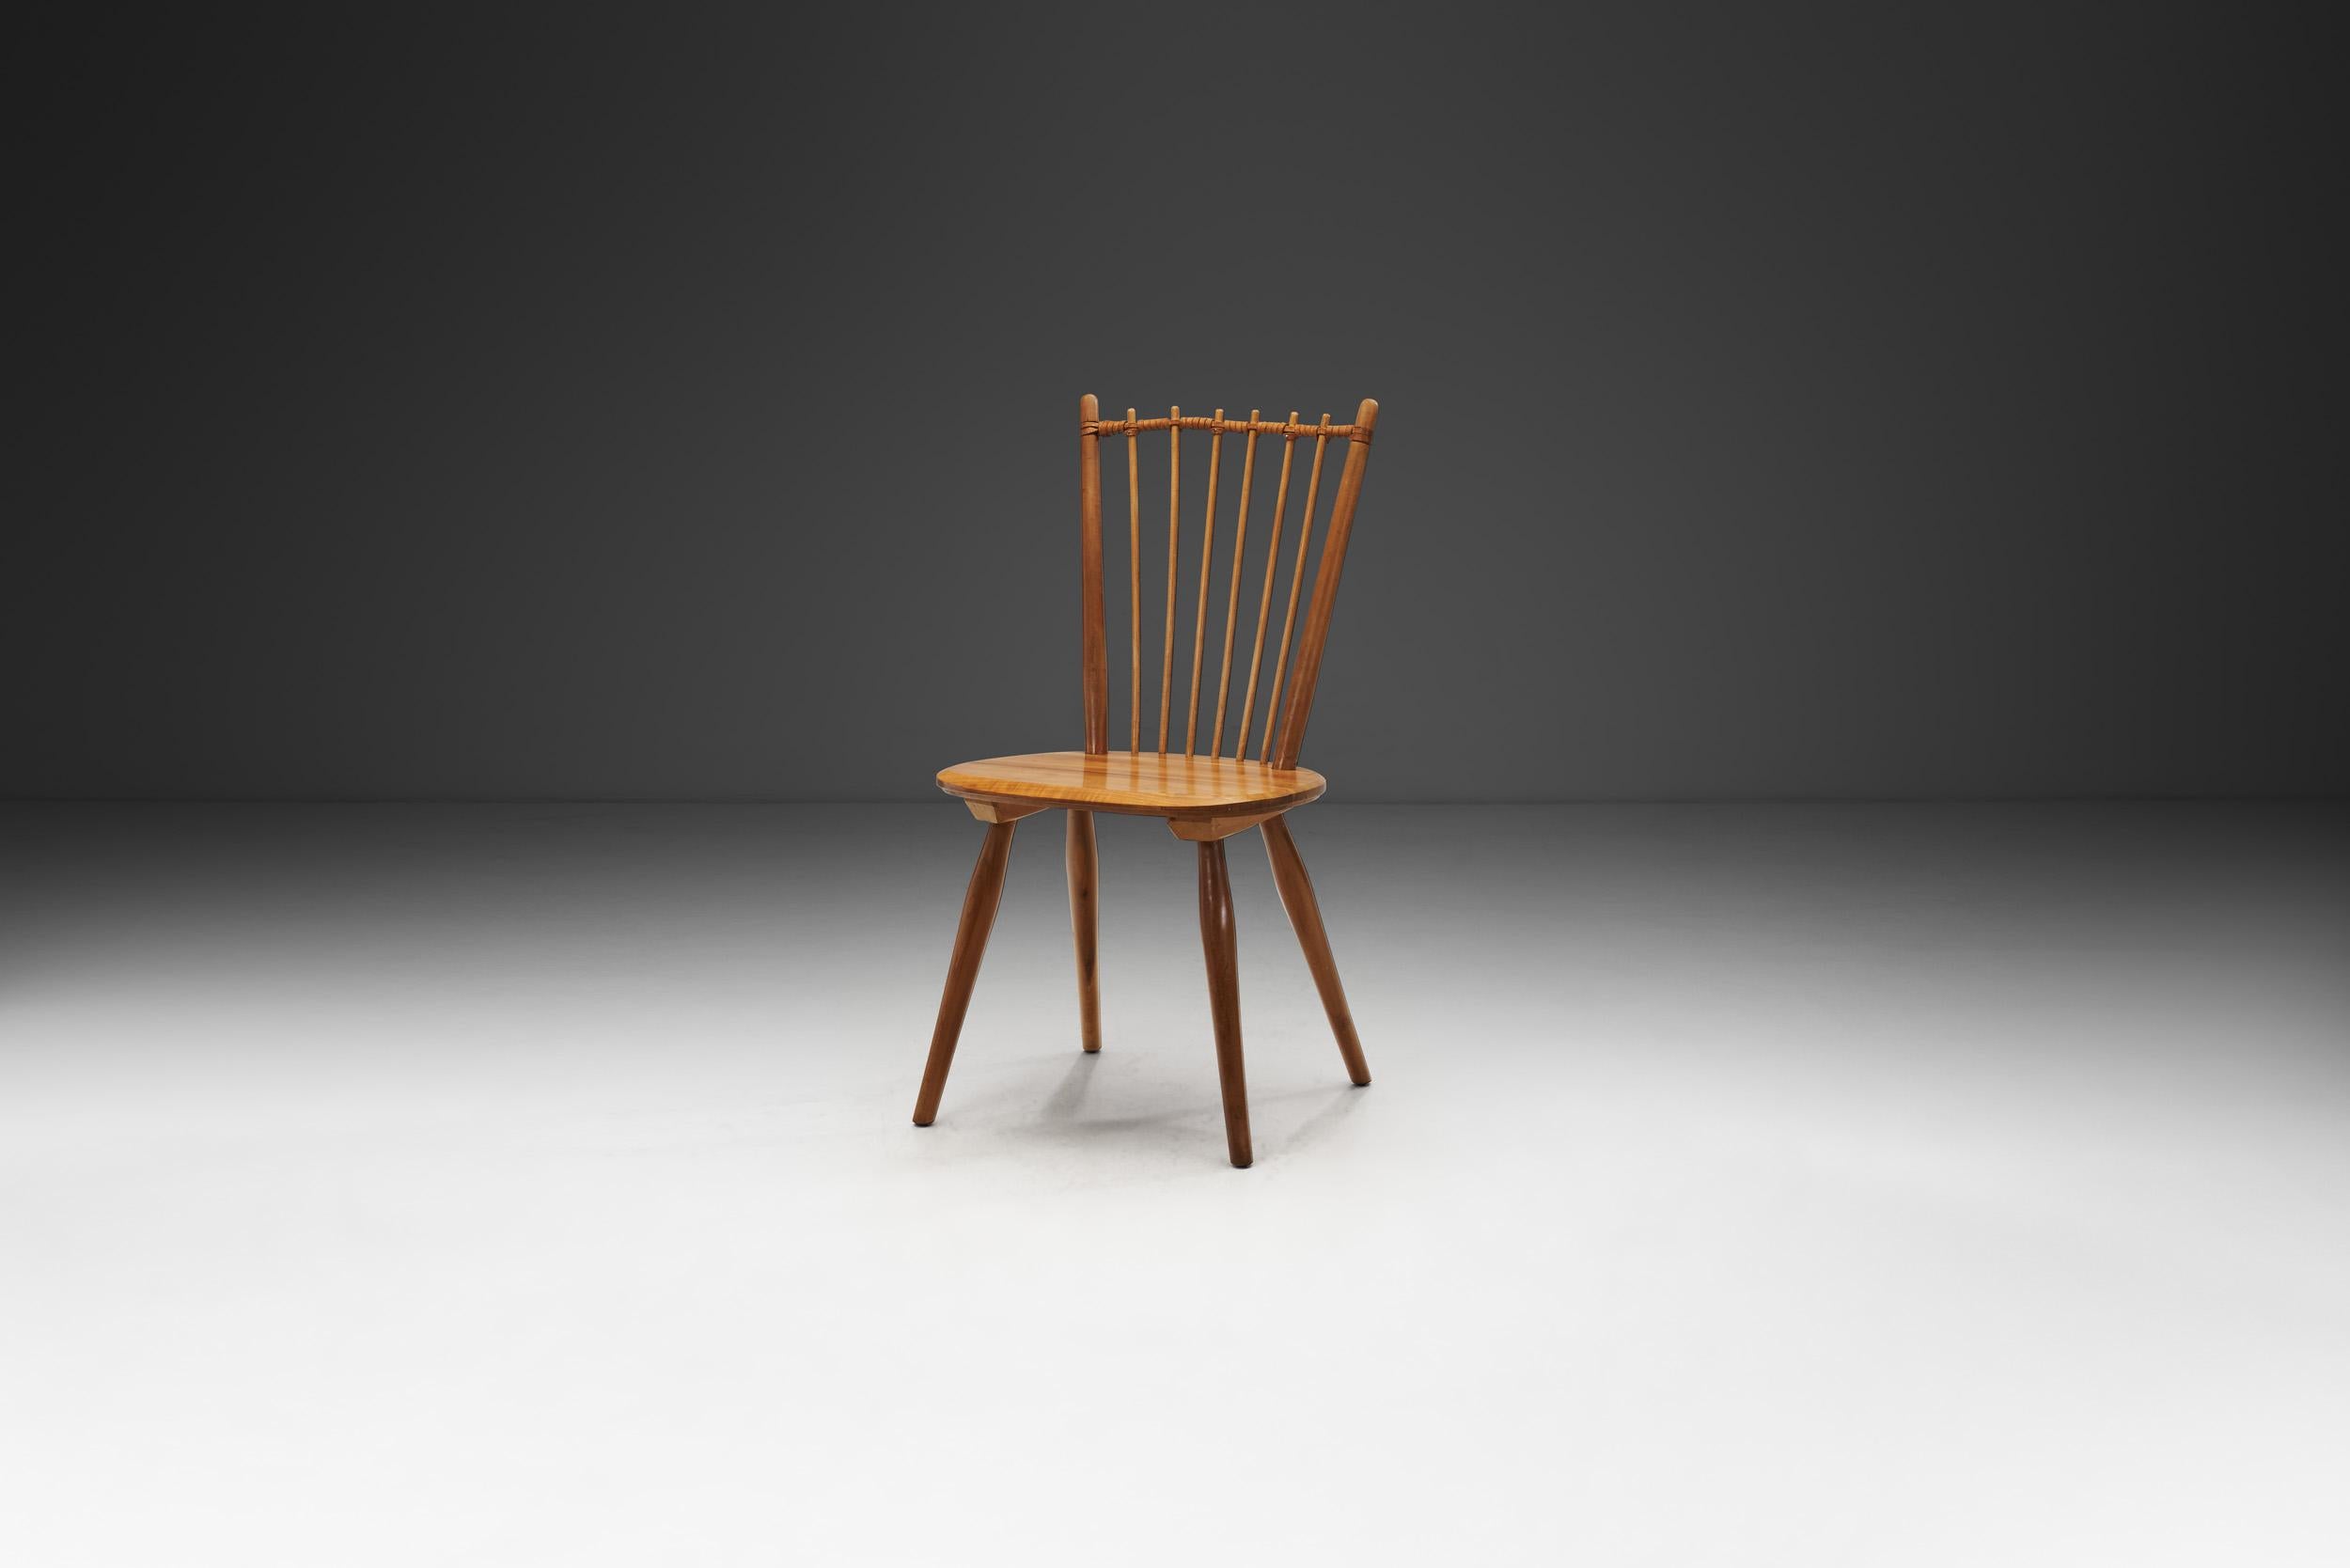 Cette chaise Arts and Crafts est peut-être le modèle le plus connu du designer allemand Albert Haberer. Le dossier flexible composé de fines broches, maintenu par la connexion en cuir tressé, fait de ce modèle une pièce immédiatement reconnaissable